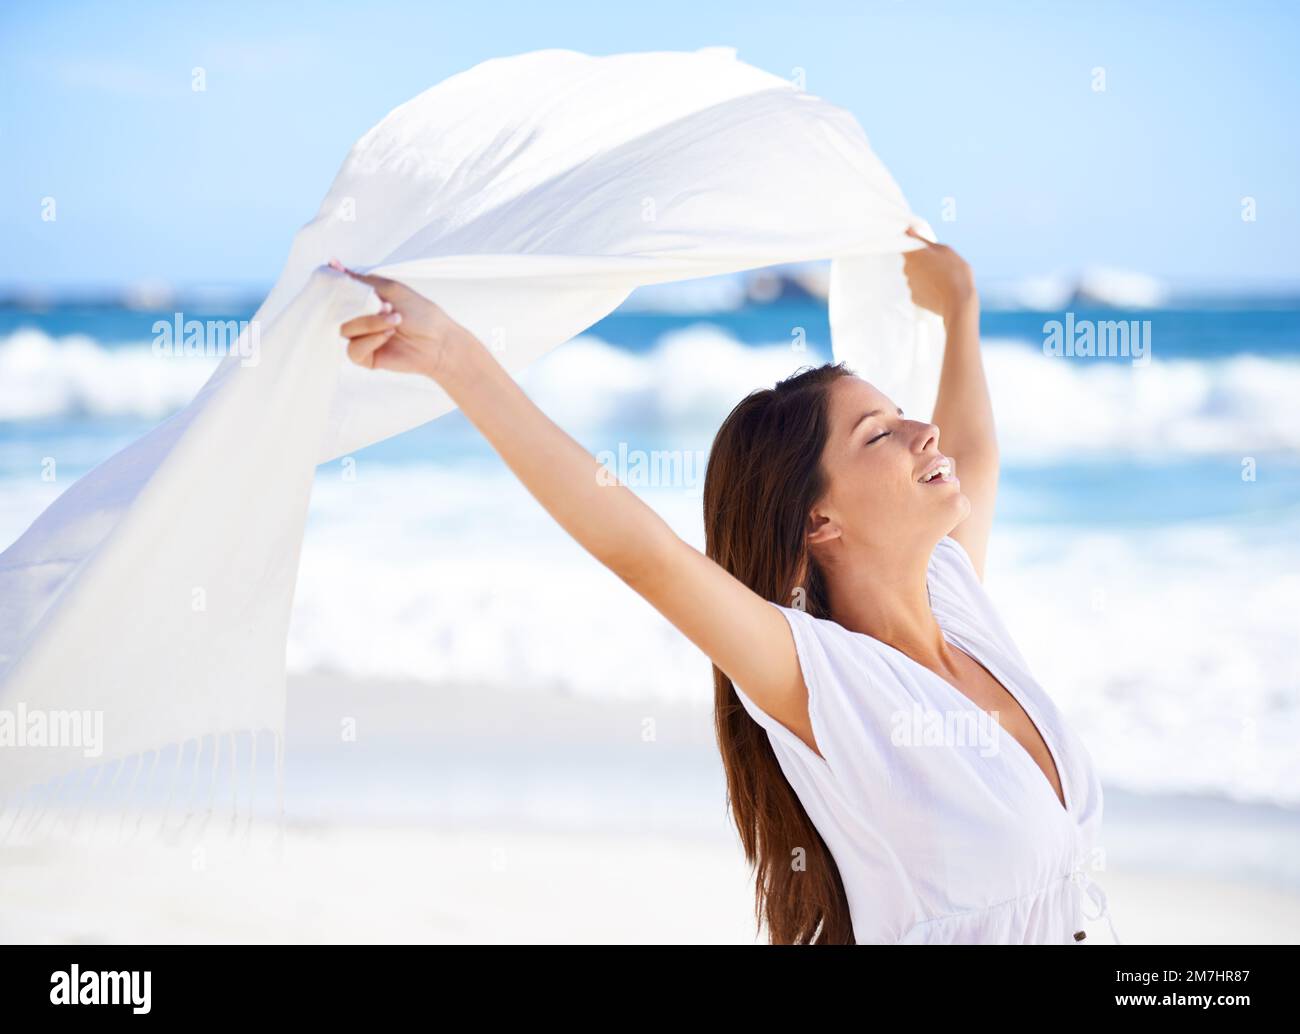 Schönheit in der Brise. Eine wunderschöne junge Frau am Strand mit einem weißen Schal, der im Wind weht. Stockfoto